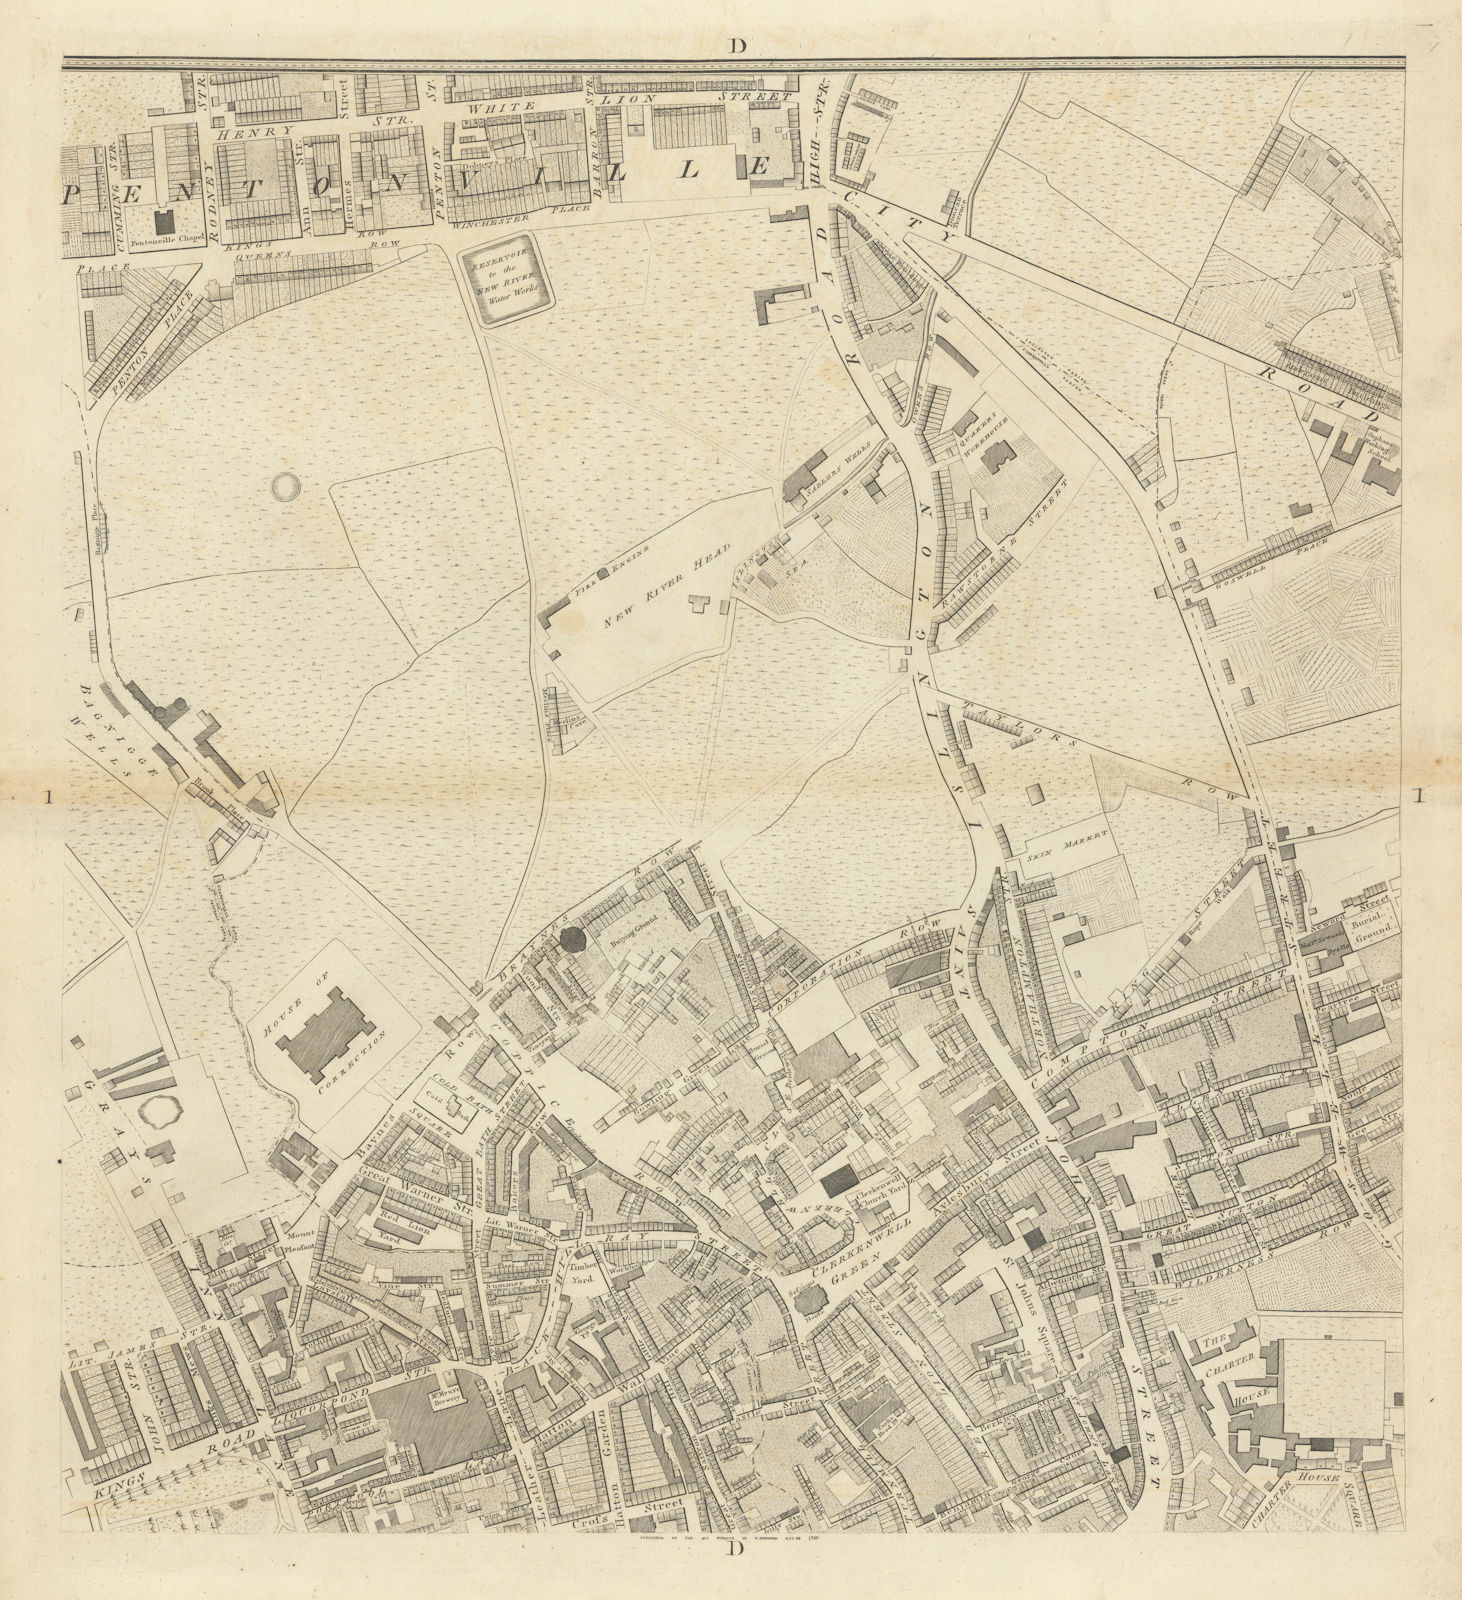 Horwood London D1 Clerkenwell Pentonville Gray's Inn City Road 1799 old map